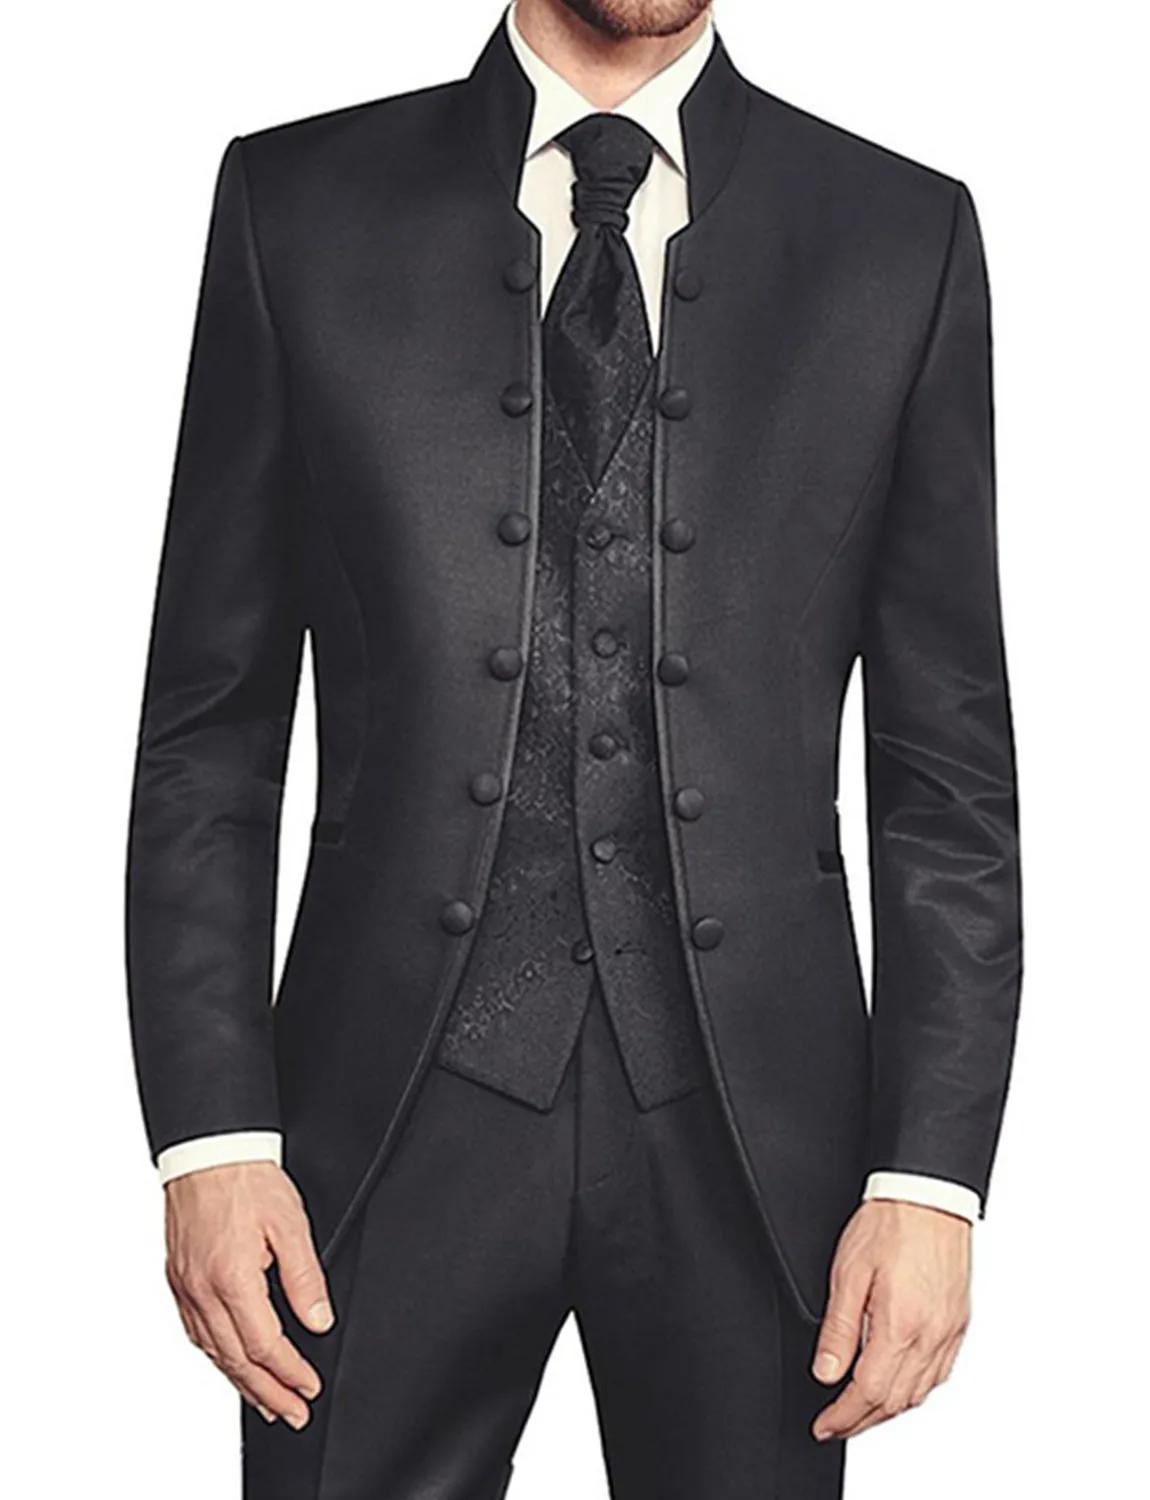 남성용 웨딩 수트 무도회 드레스 재킷 및 바지 및 조끼 세트, 슬림핏 턱시도 남성 블레이저, 영국 스타일 맞춤형 신랑 의류